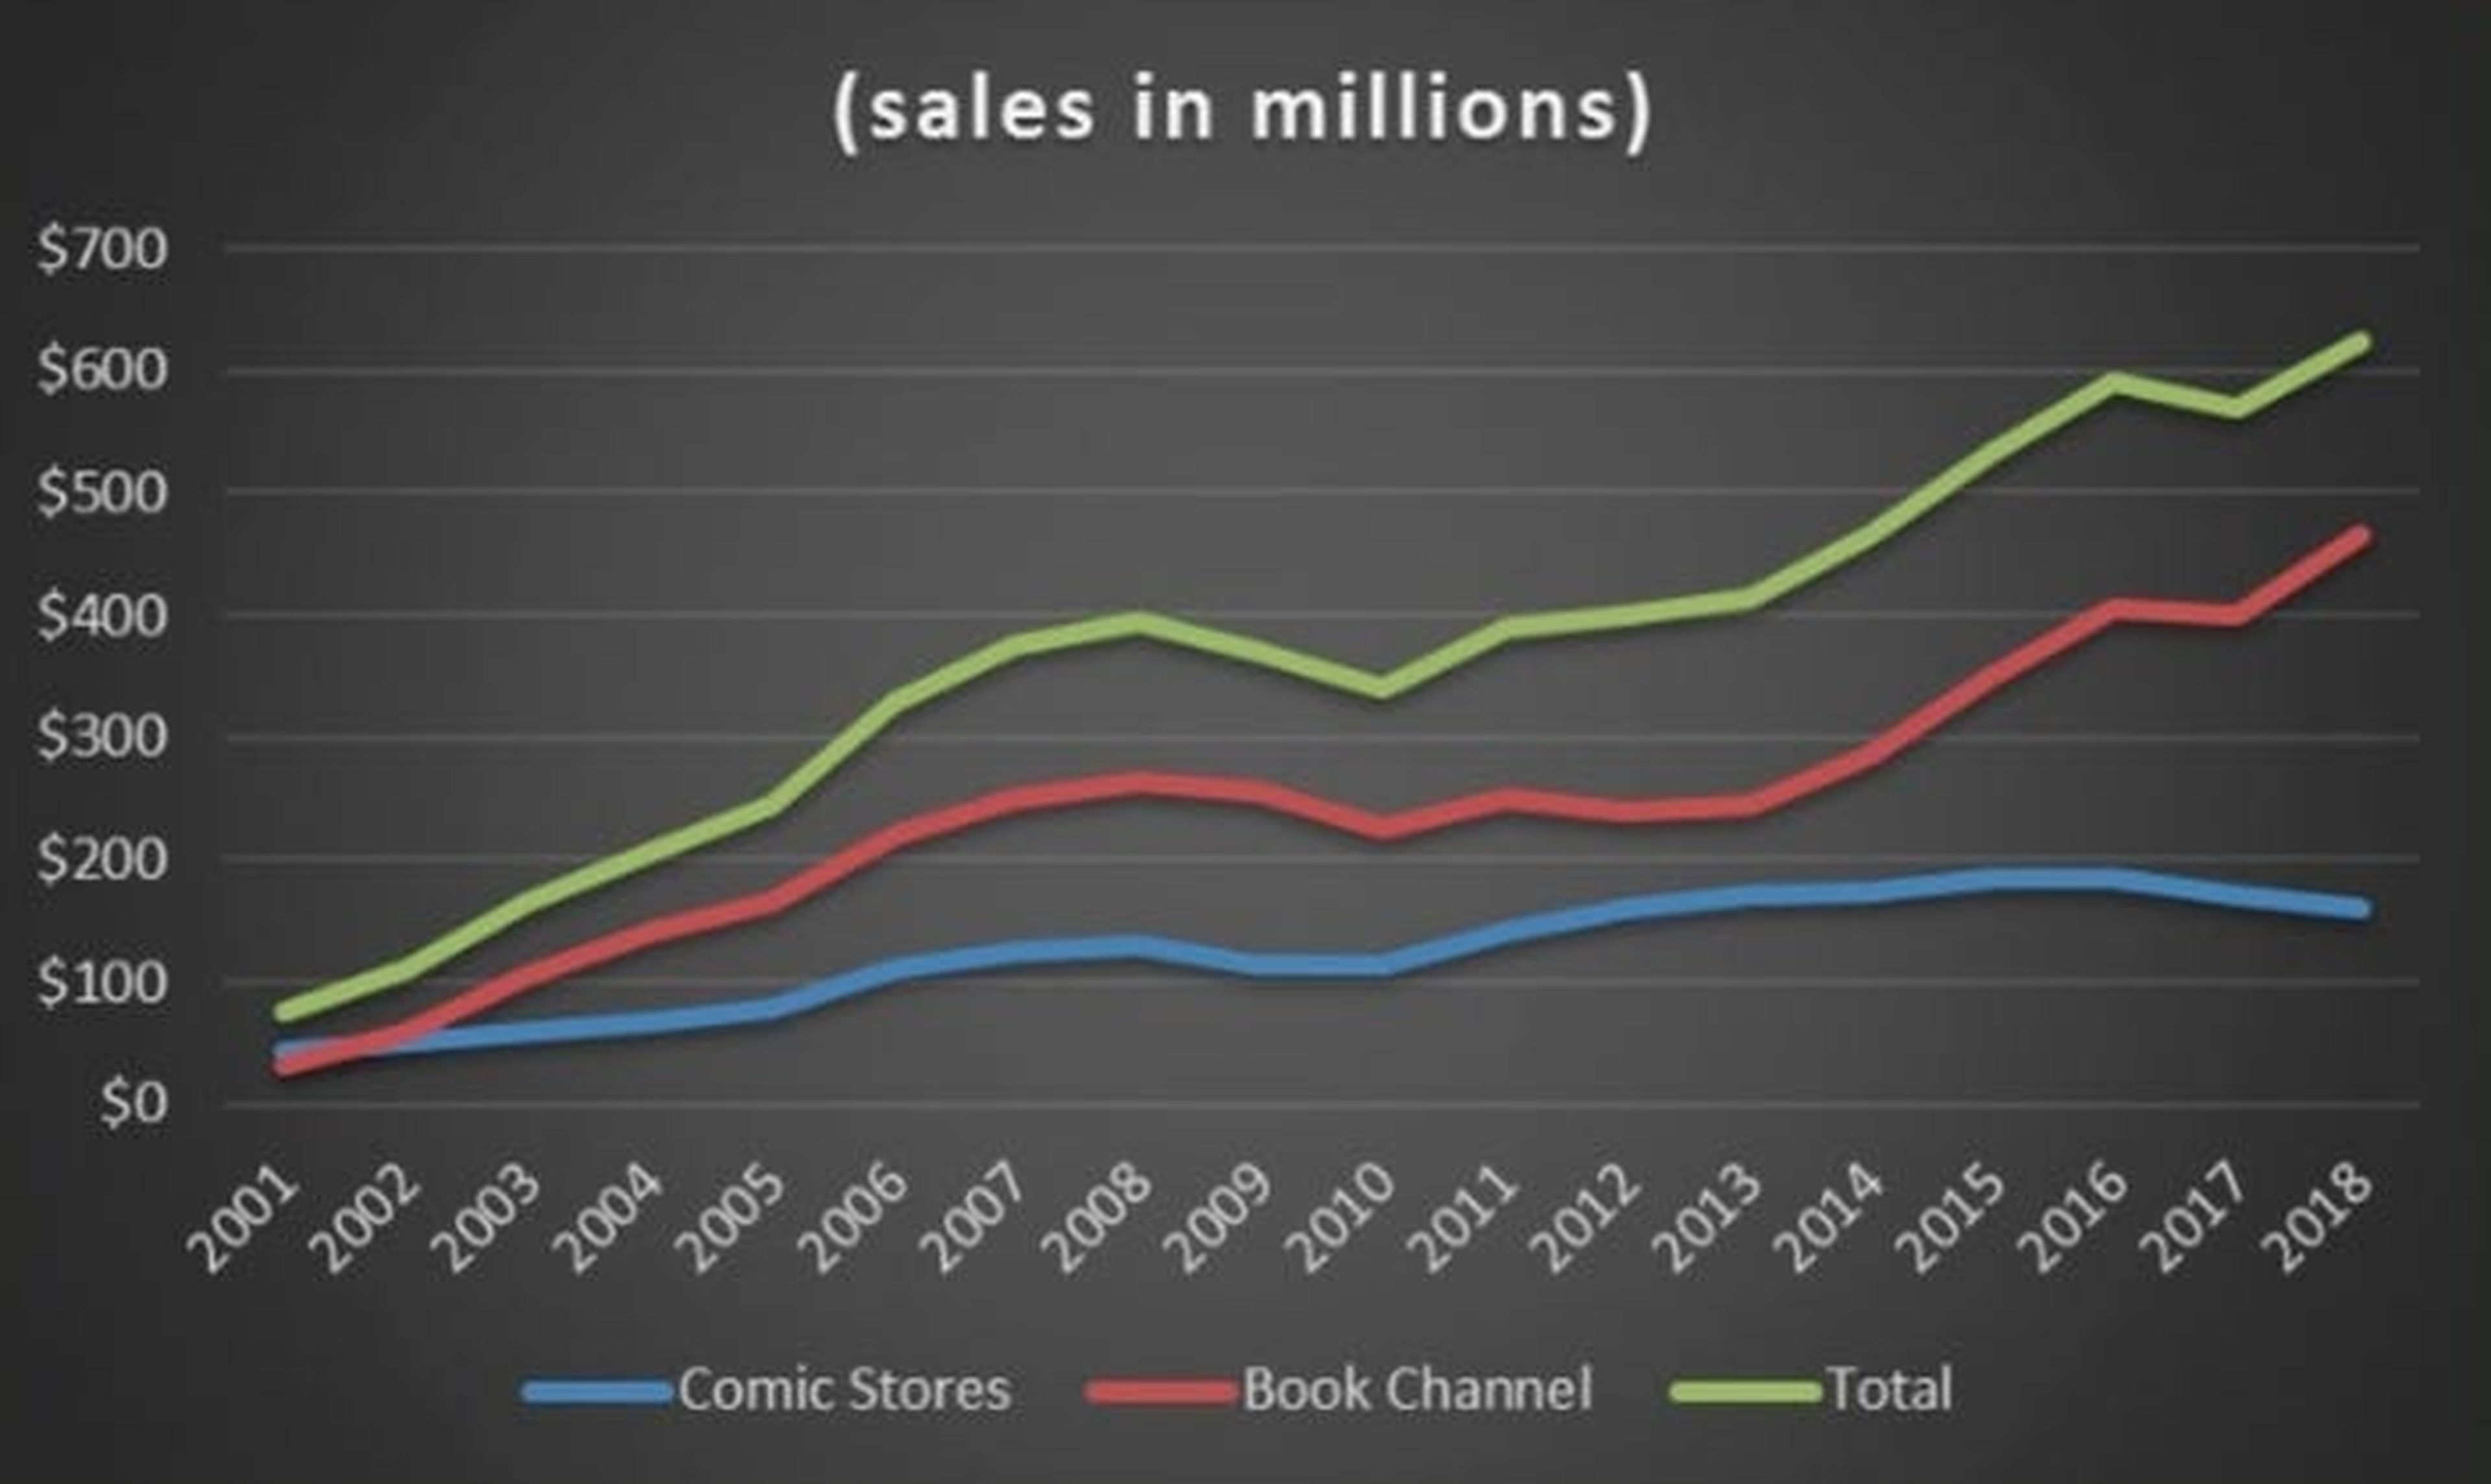 Las novelas gráficas han aumentado su popularidad a través del canal de libros.